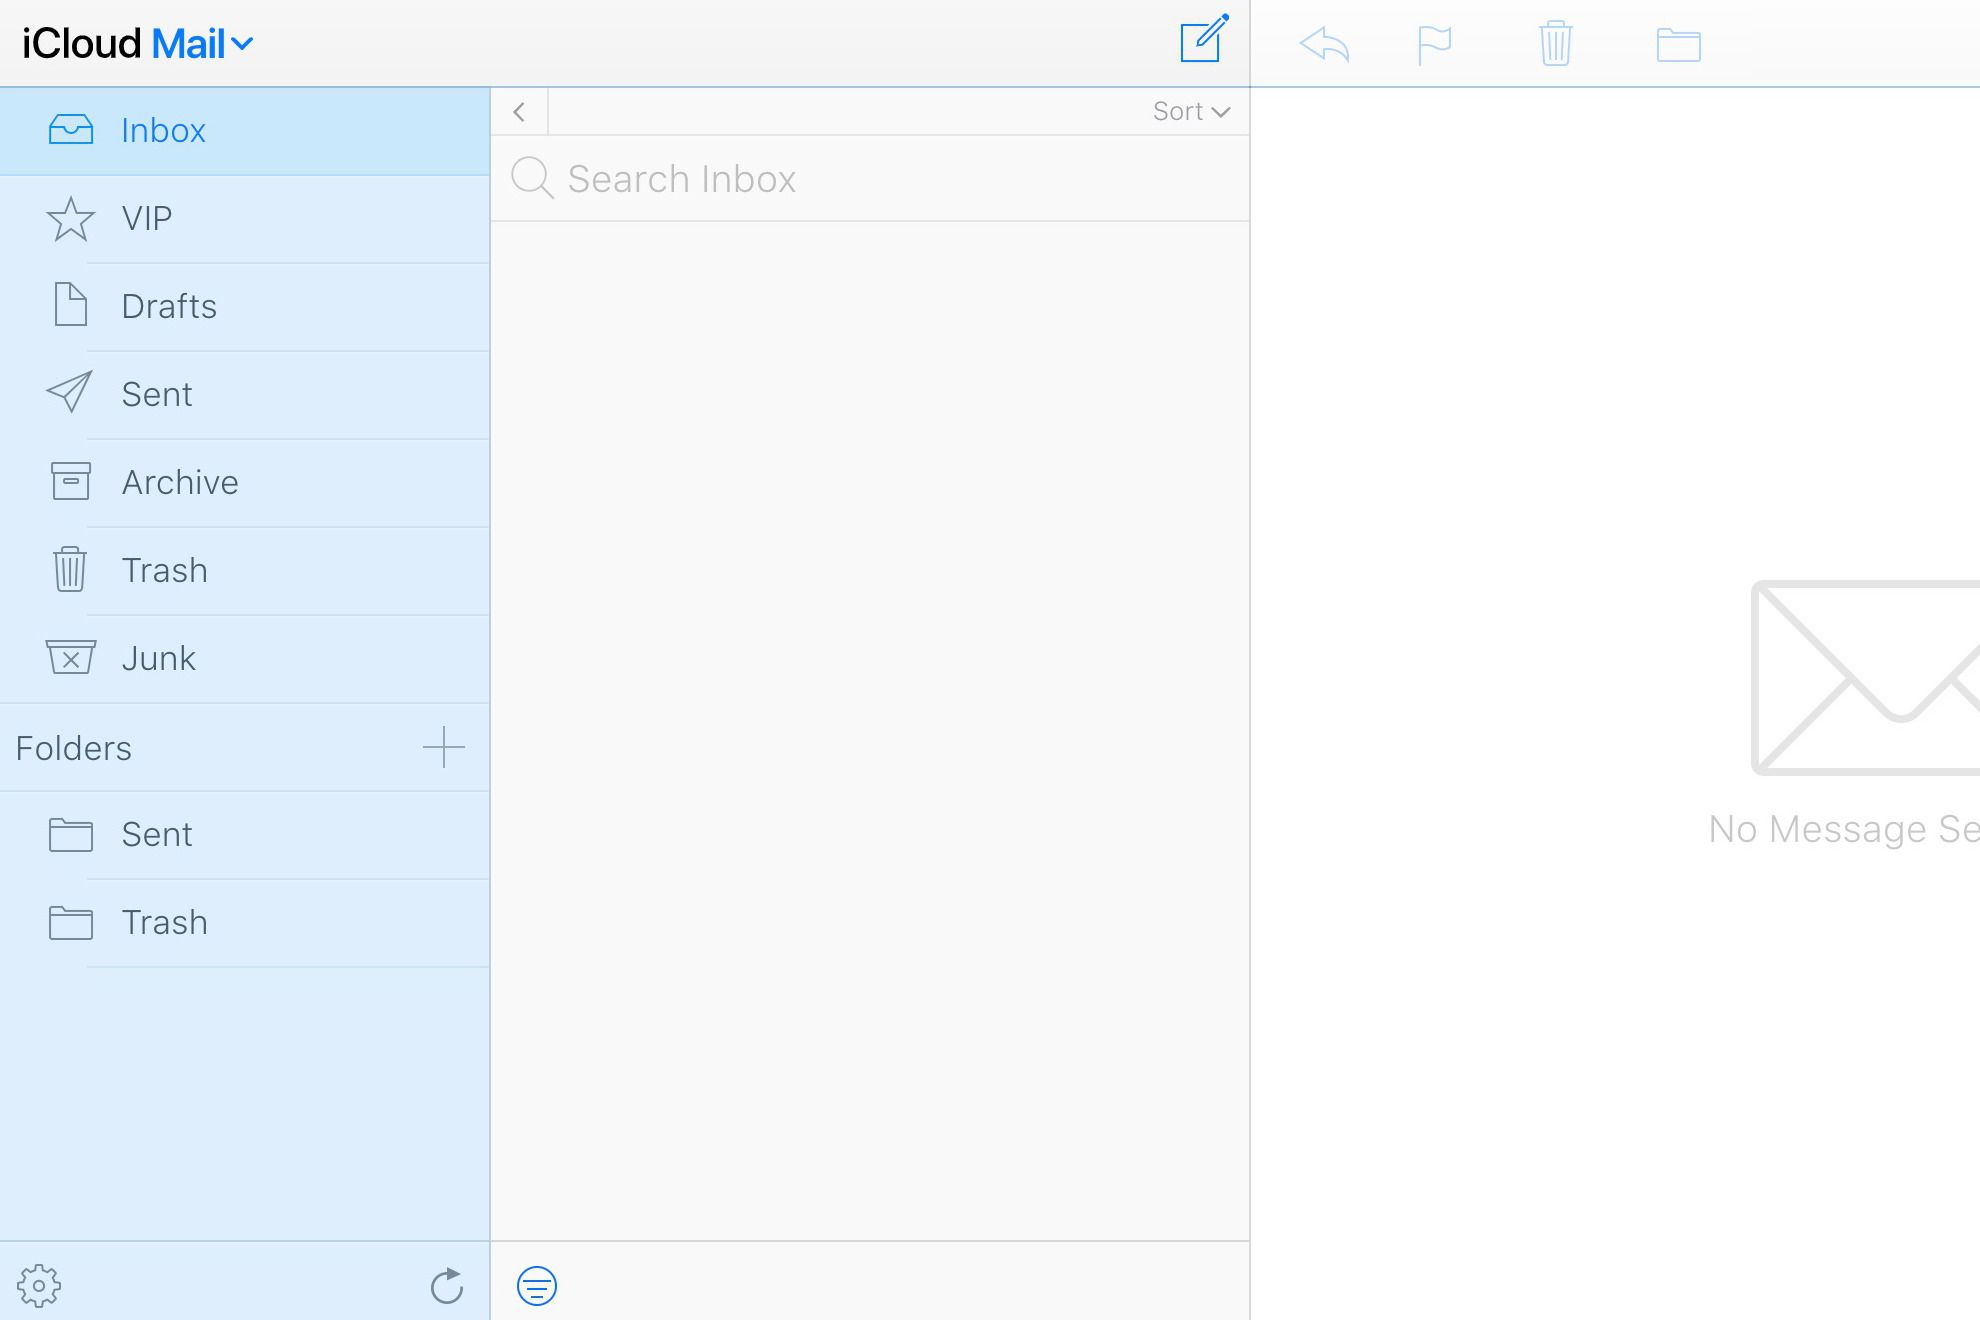 Interface principal do iCloud Mail